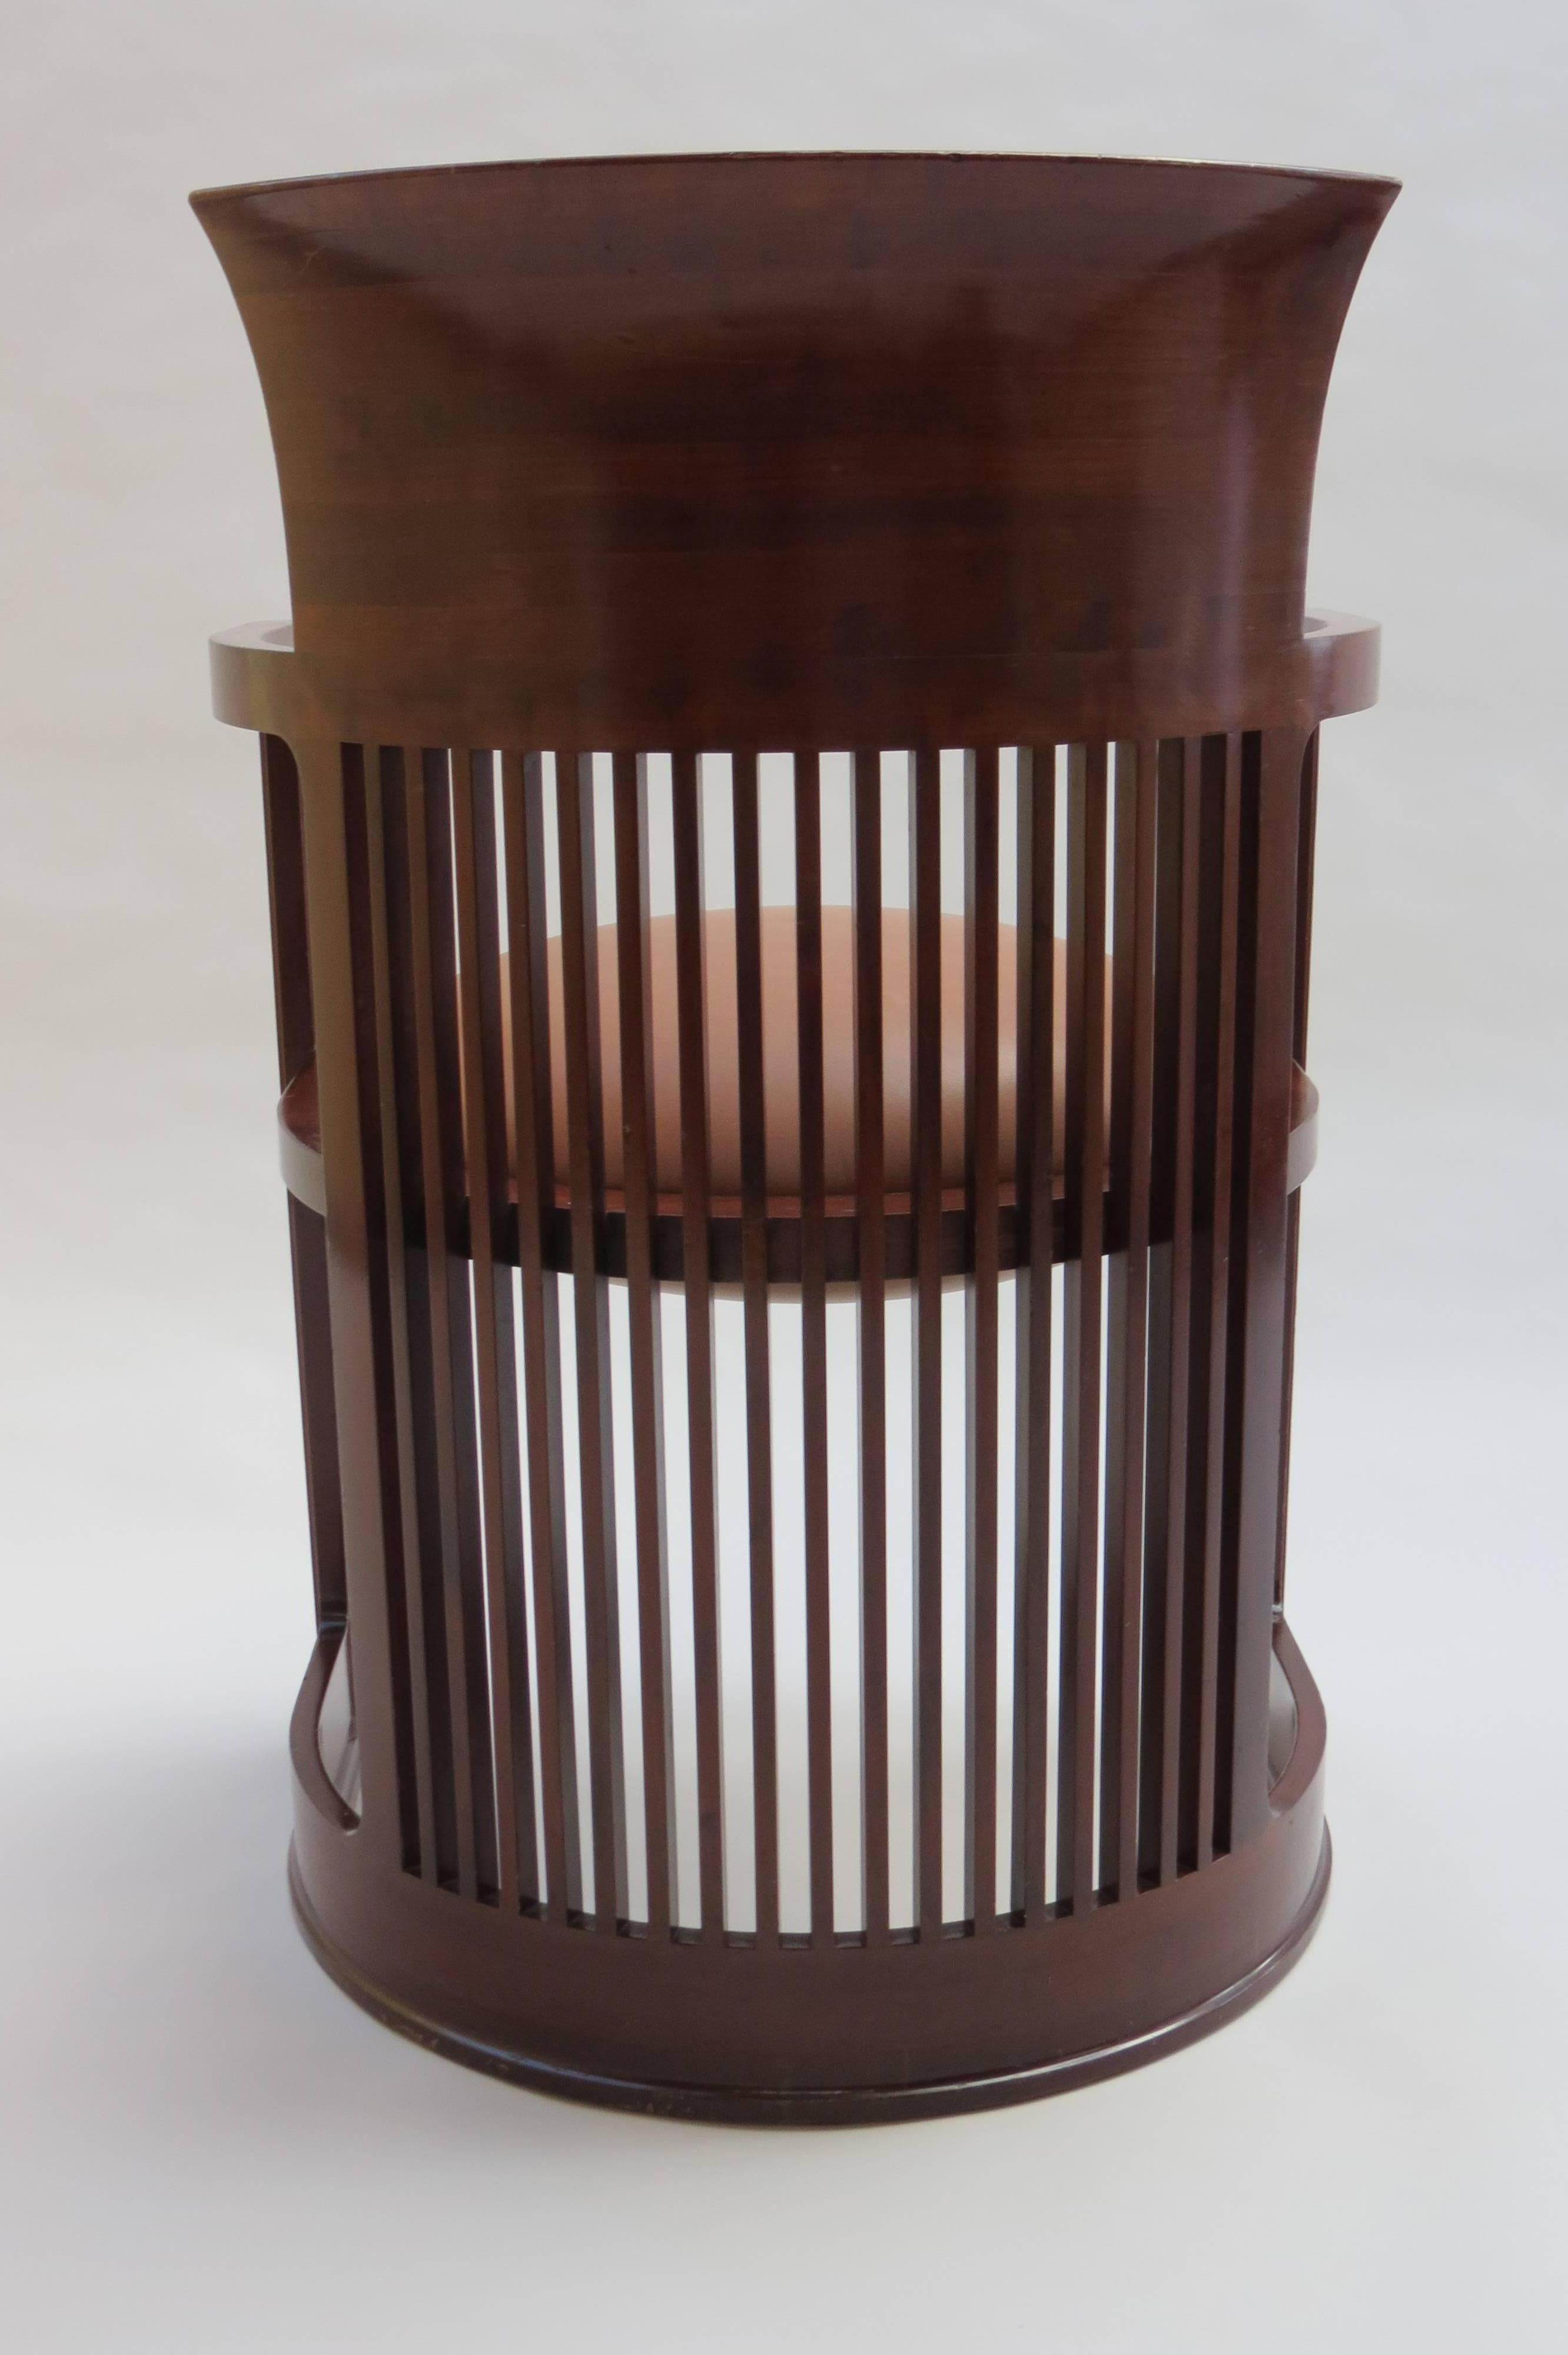 Art Deco Barrel Taliesin Chair designed by Frank Lloyd Wright